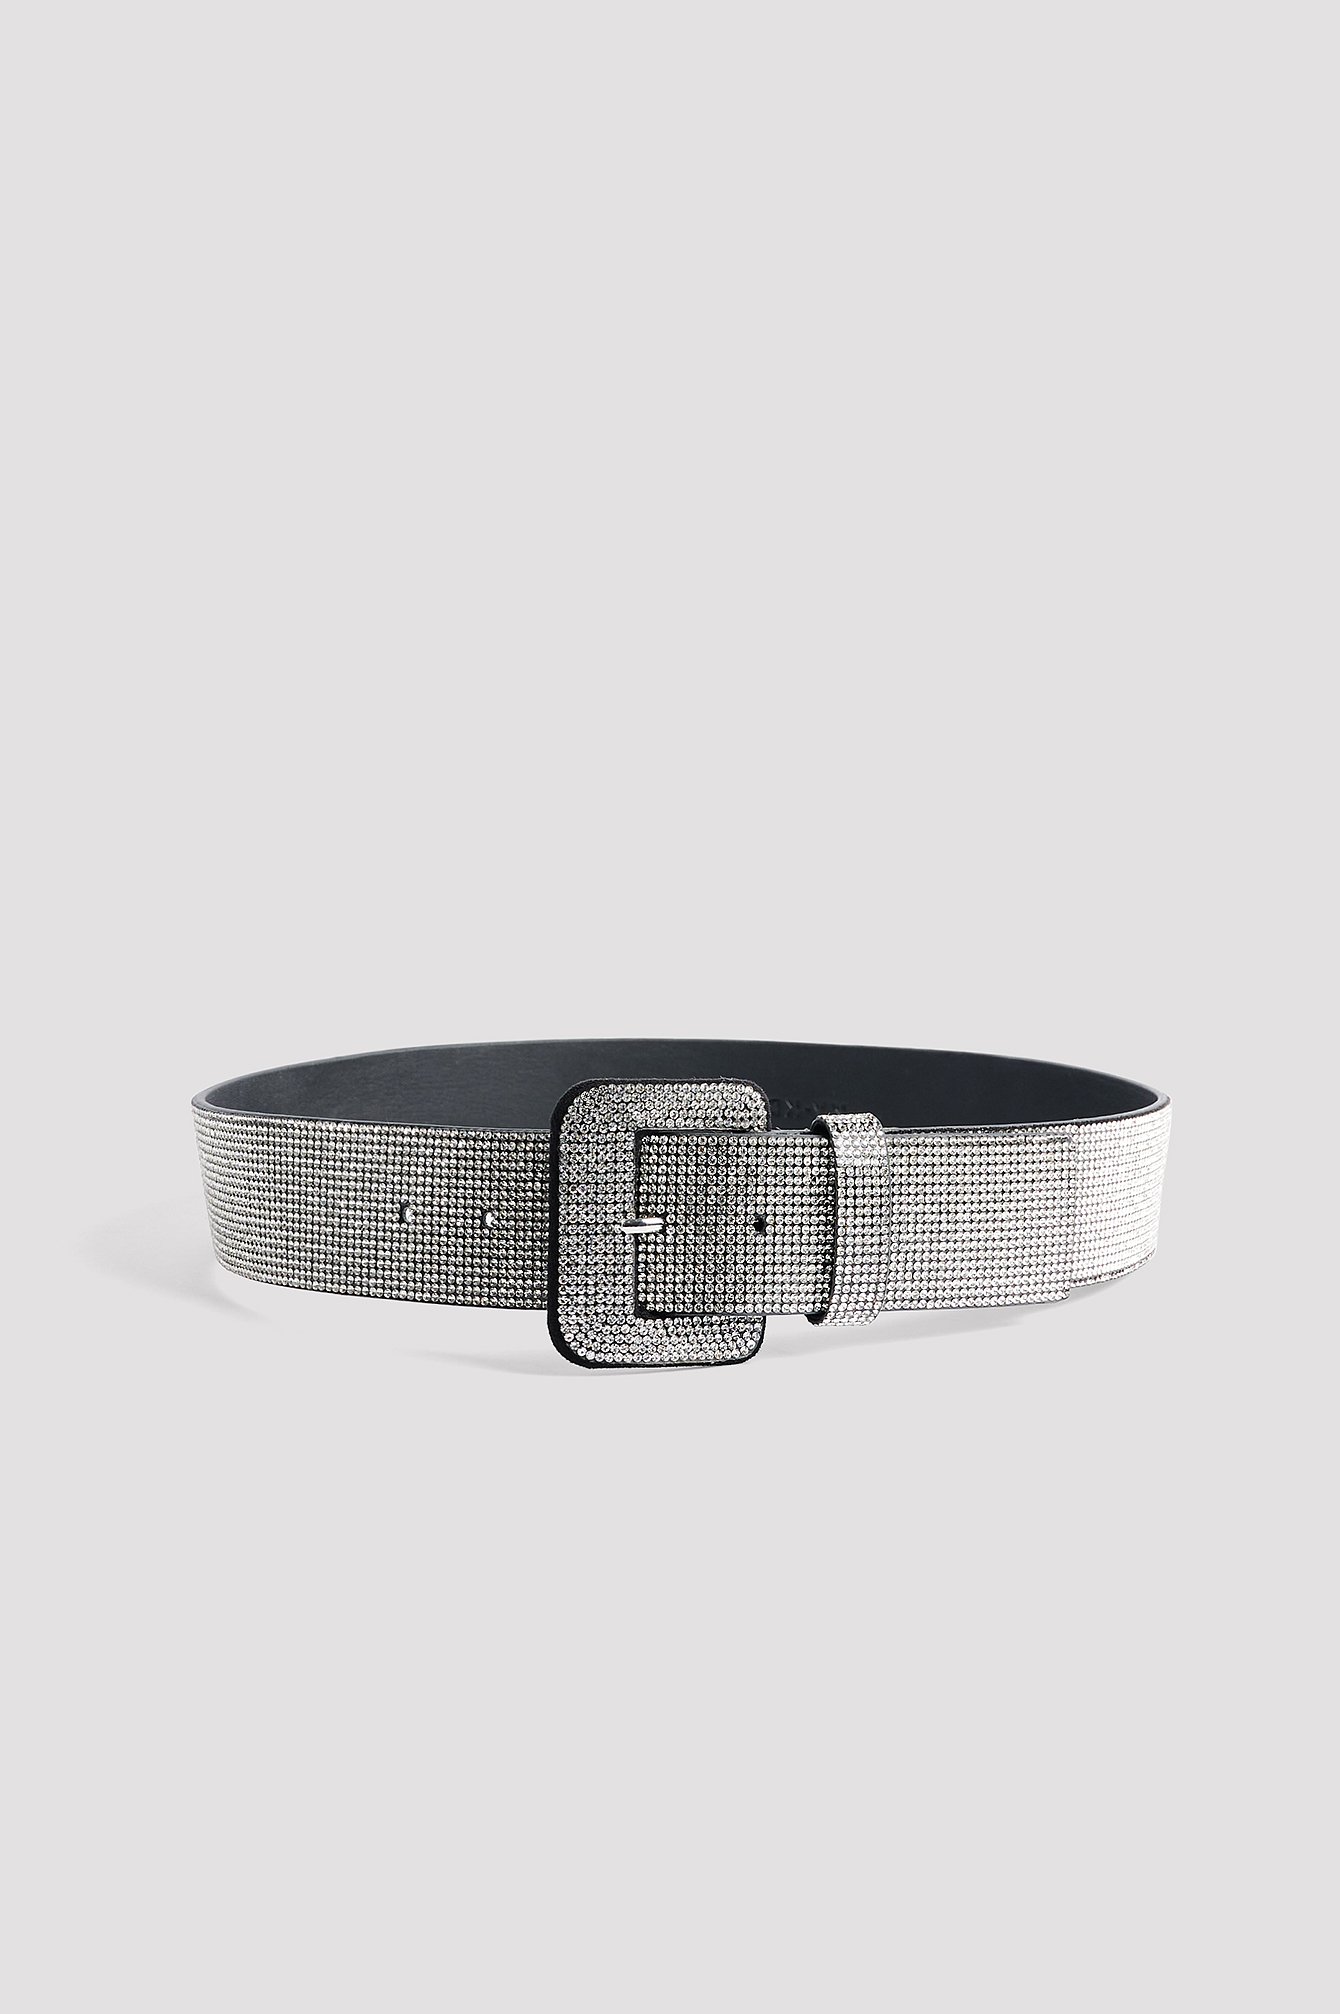 Black/Silver Wide Sparkling Belt